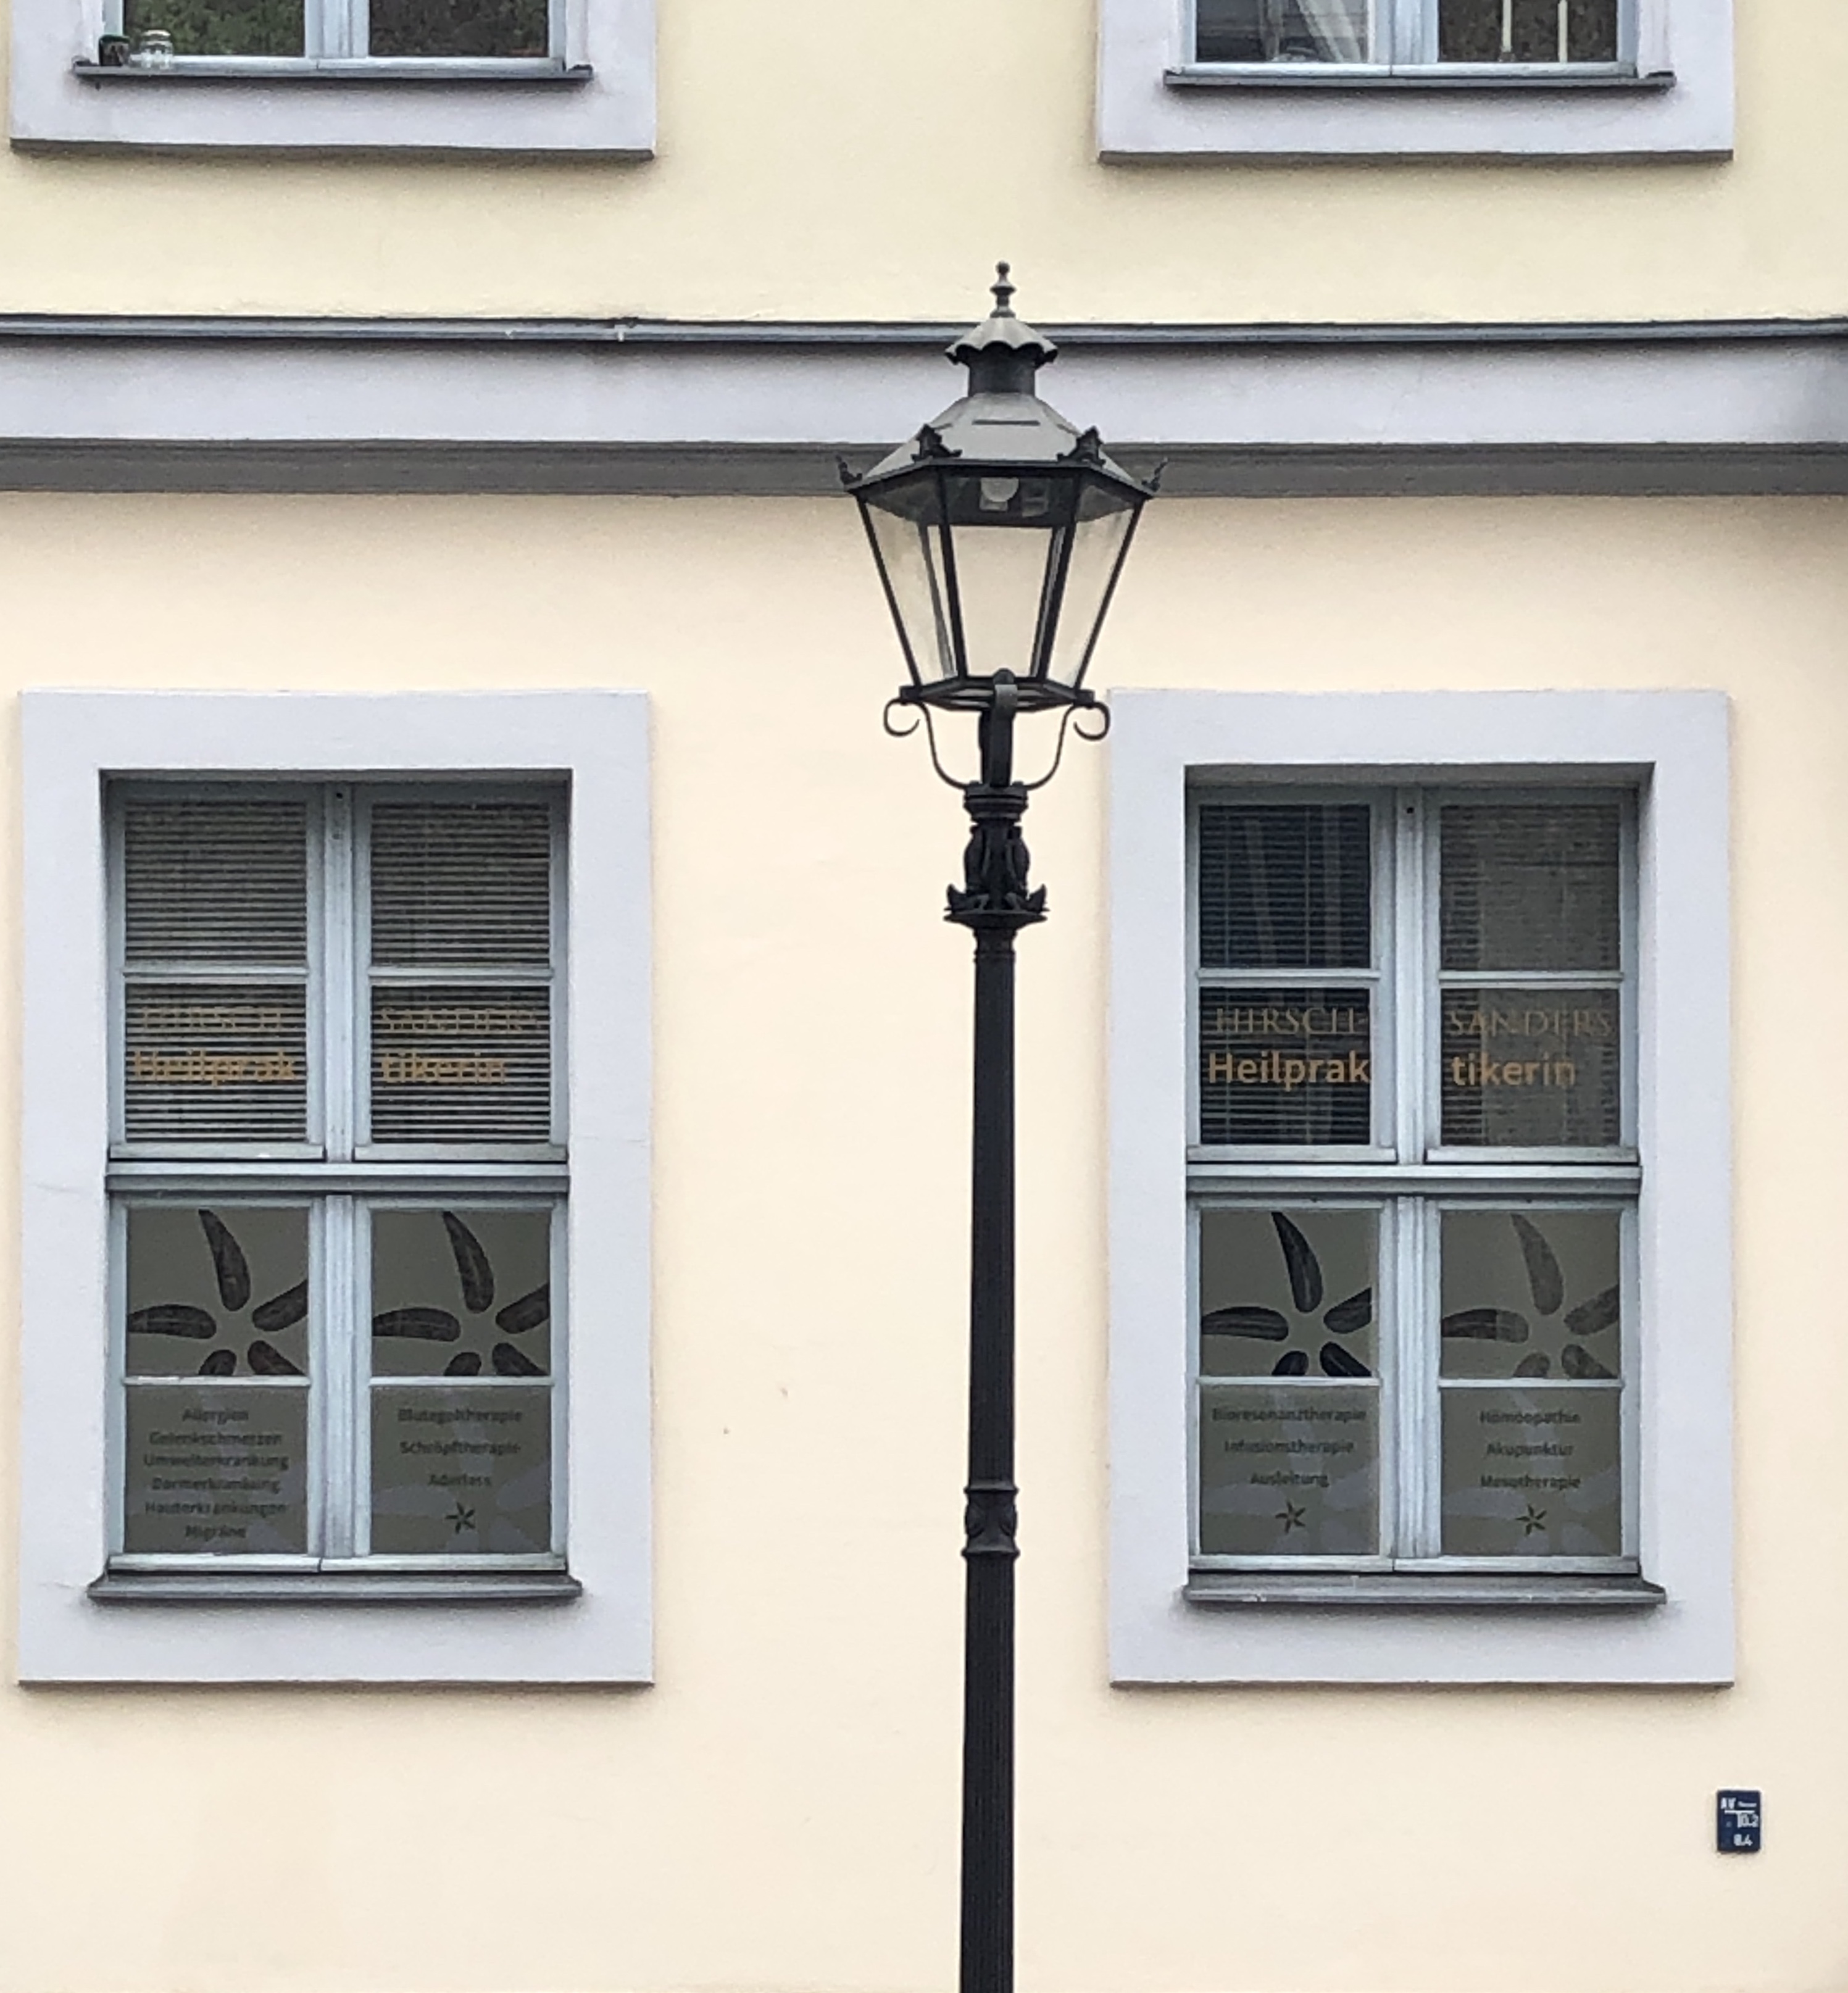 Fensterfront der Naturheilpraxis Akupunktur zur  Raucherentwöhnung Potsdam / Wannsee / Zehlendorf